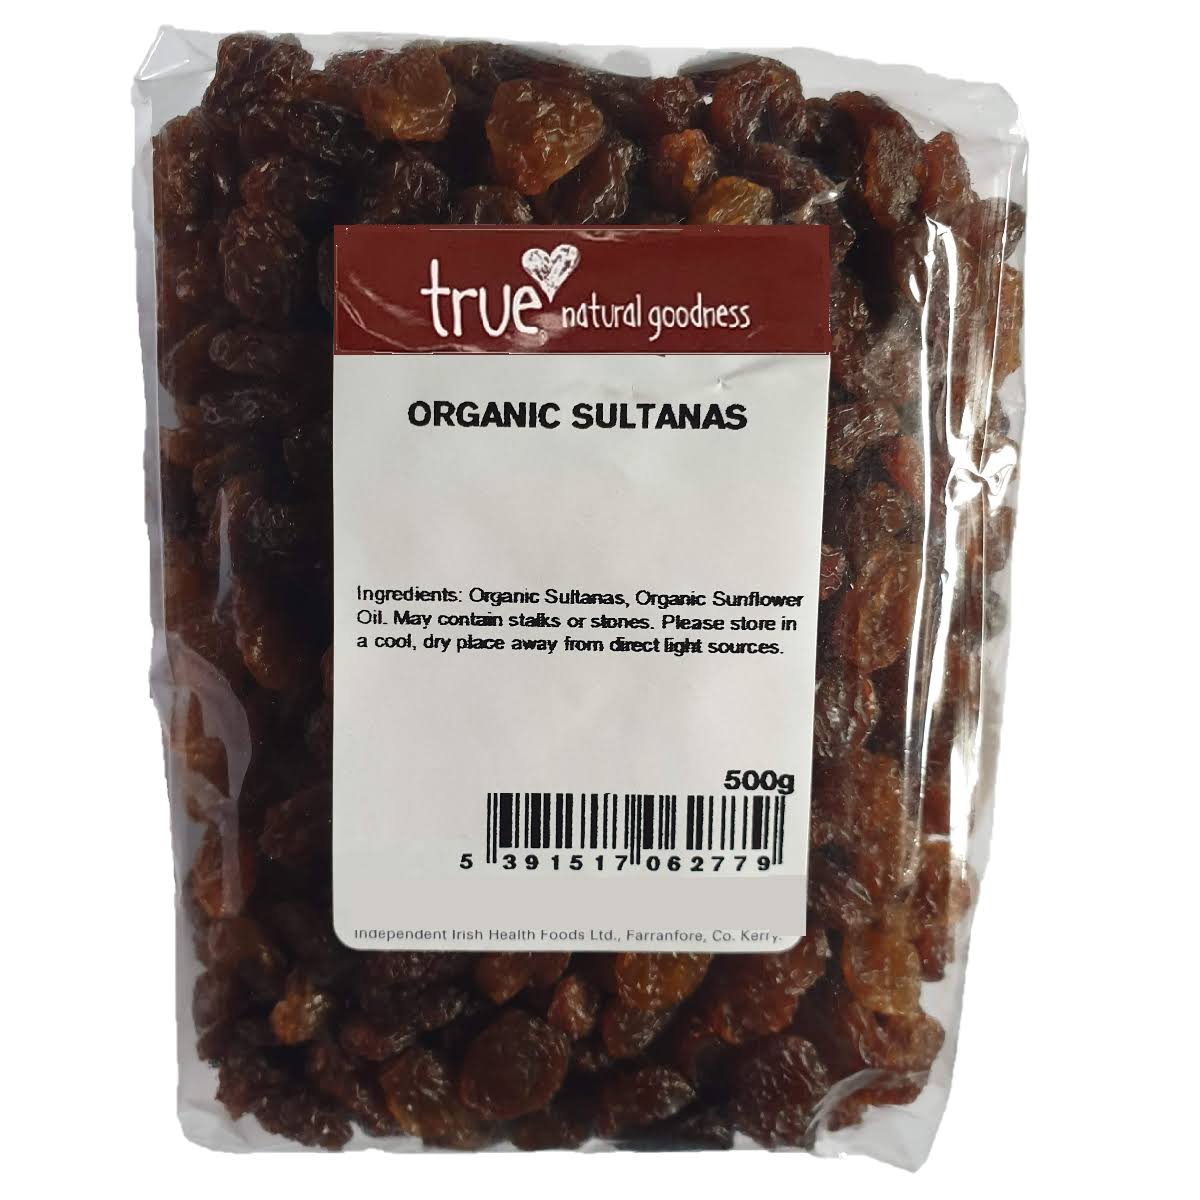 True Natural Goodness Organic Sultanas 500g